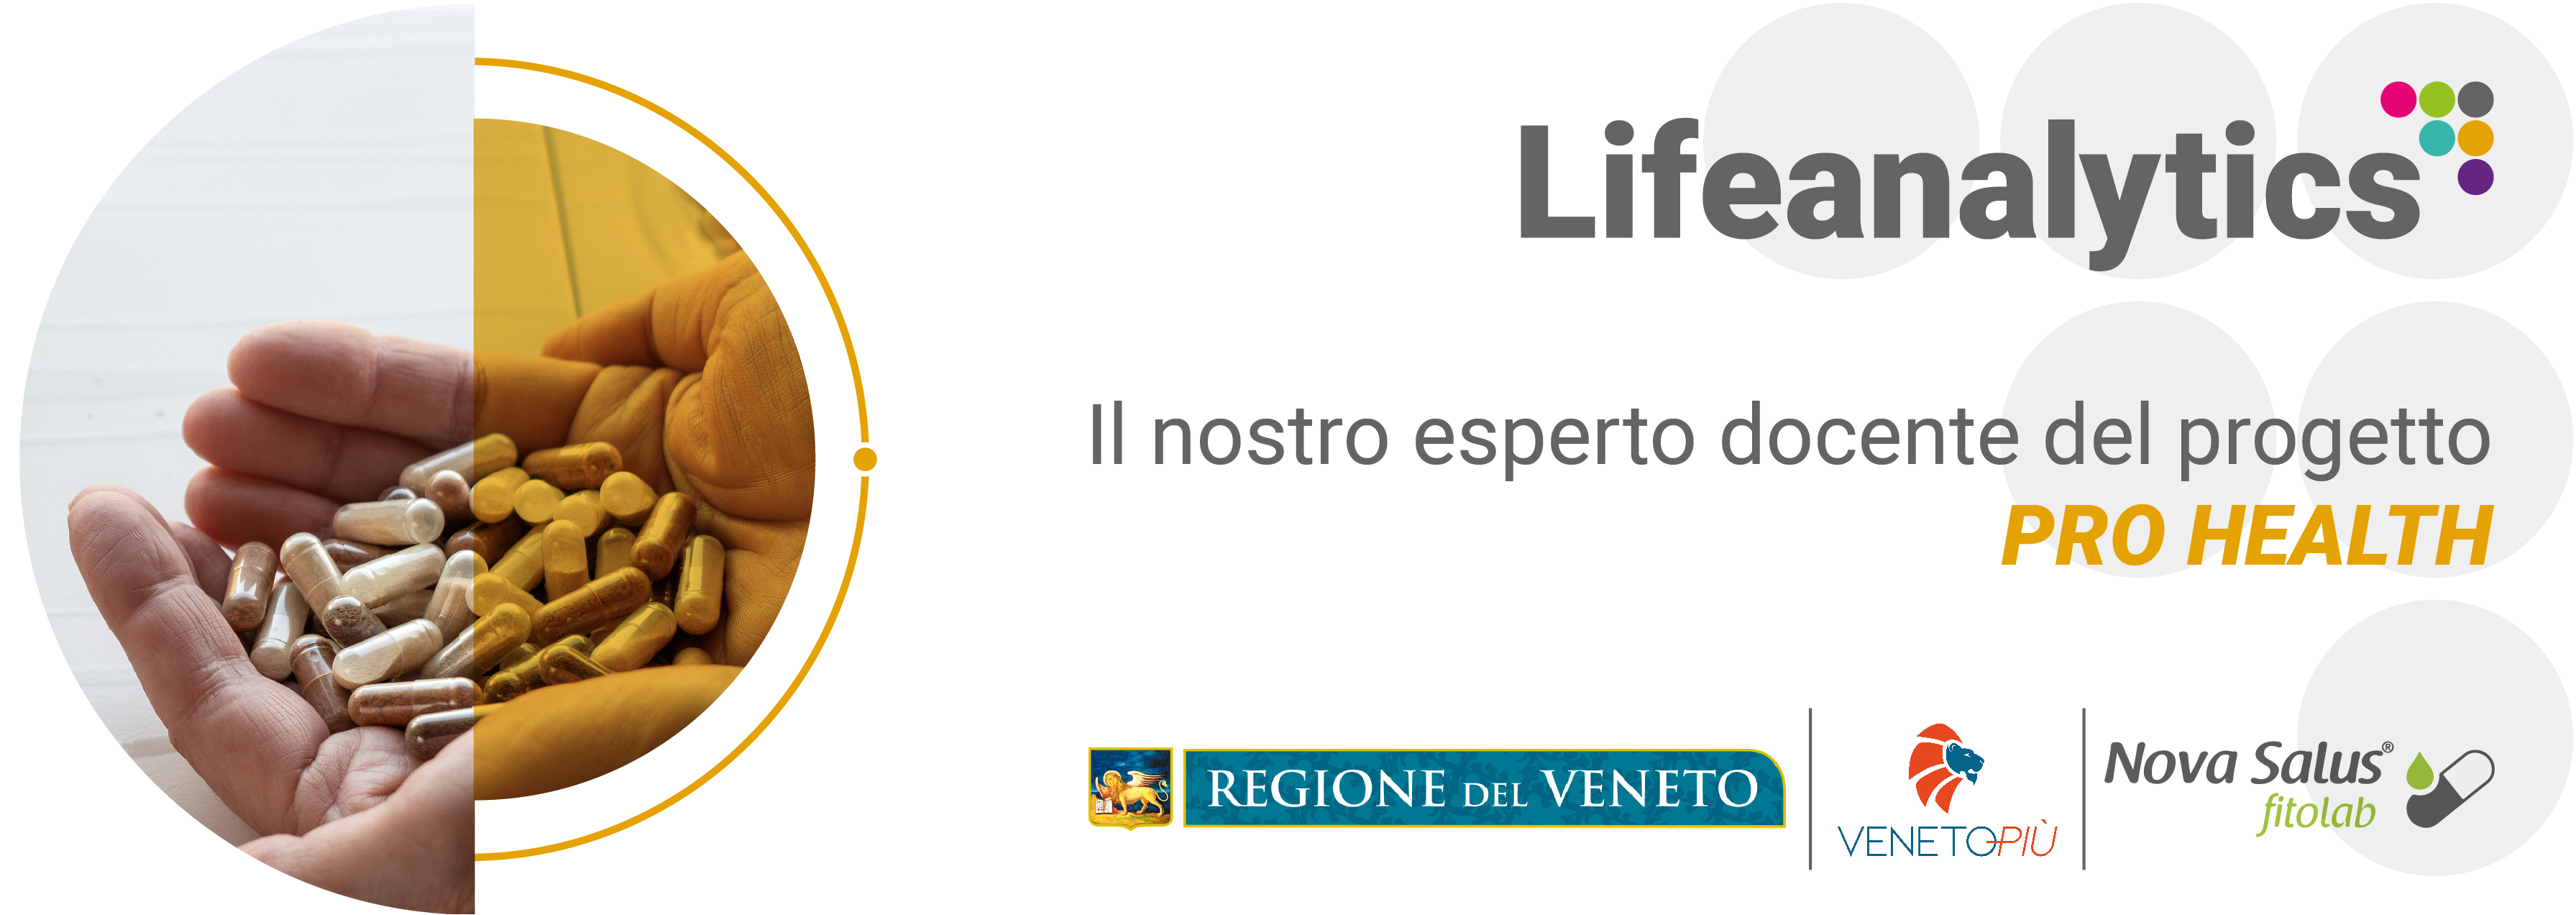 Illustrazione che promuove Progetto Formativo PRO HEALTH Lifeanalytics con il nostro esperto Gianluca Salmistraro